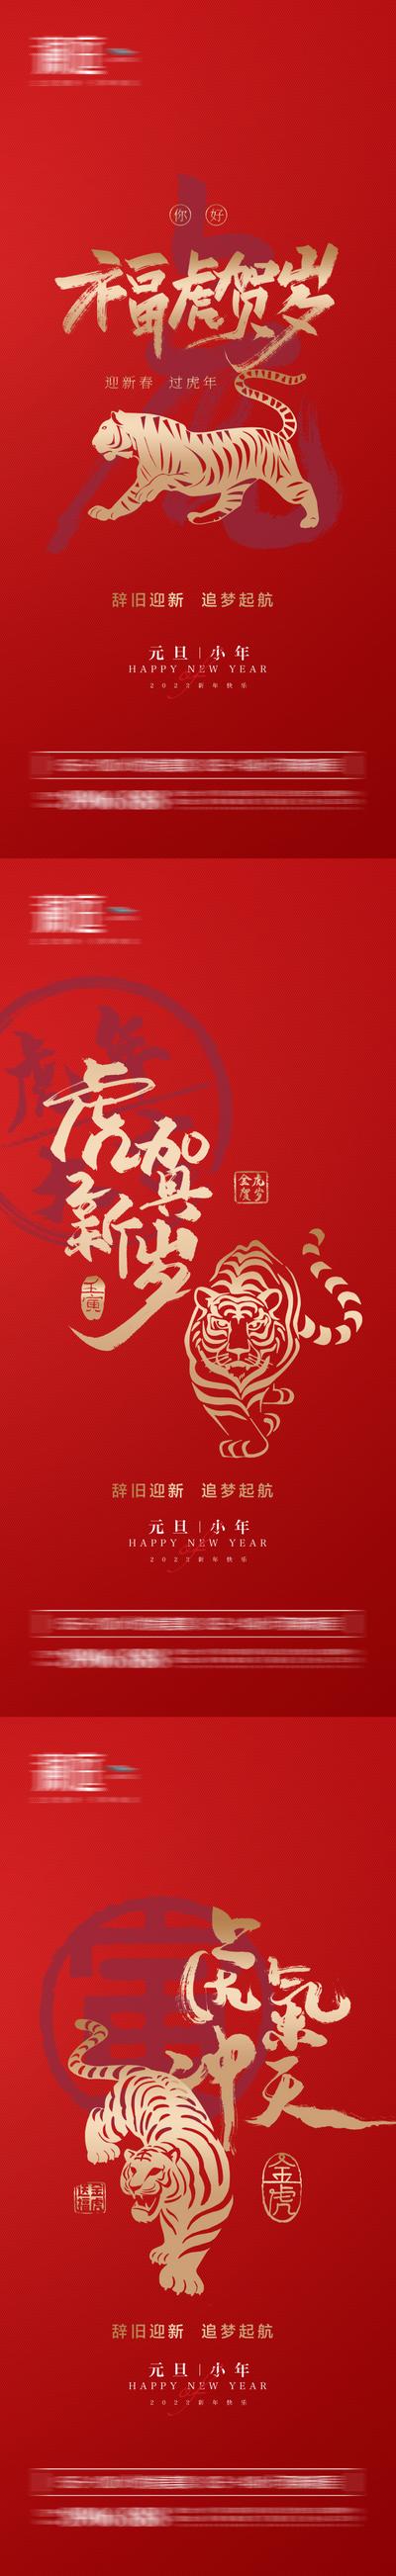 【南门网】海报 房地产 公历节日 元旦 虎年 老虎 剪纸 红金 系列